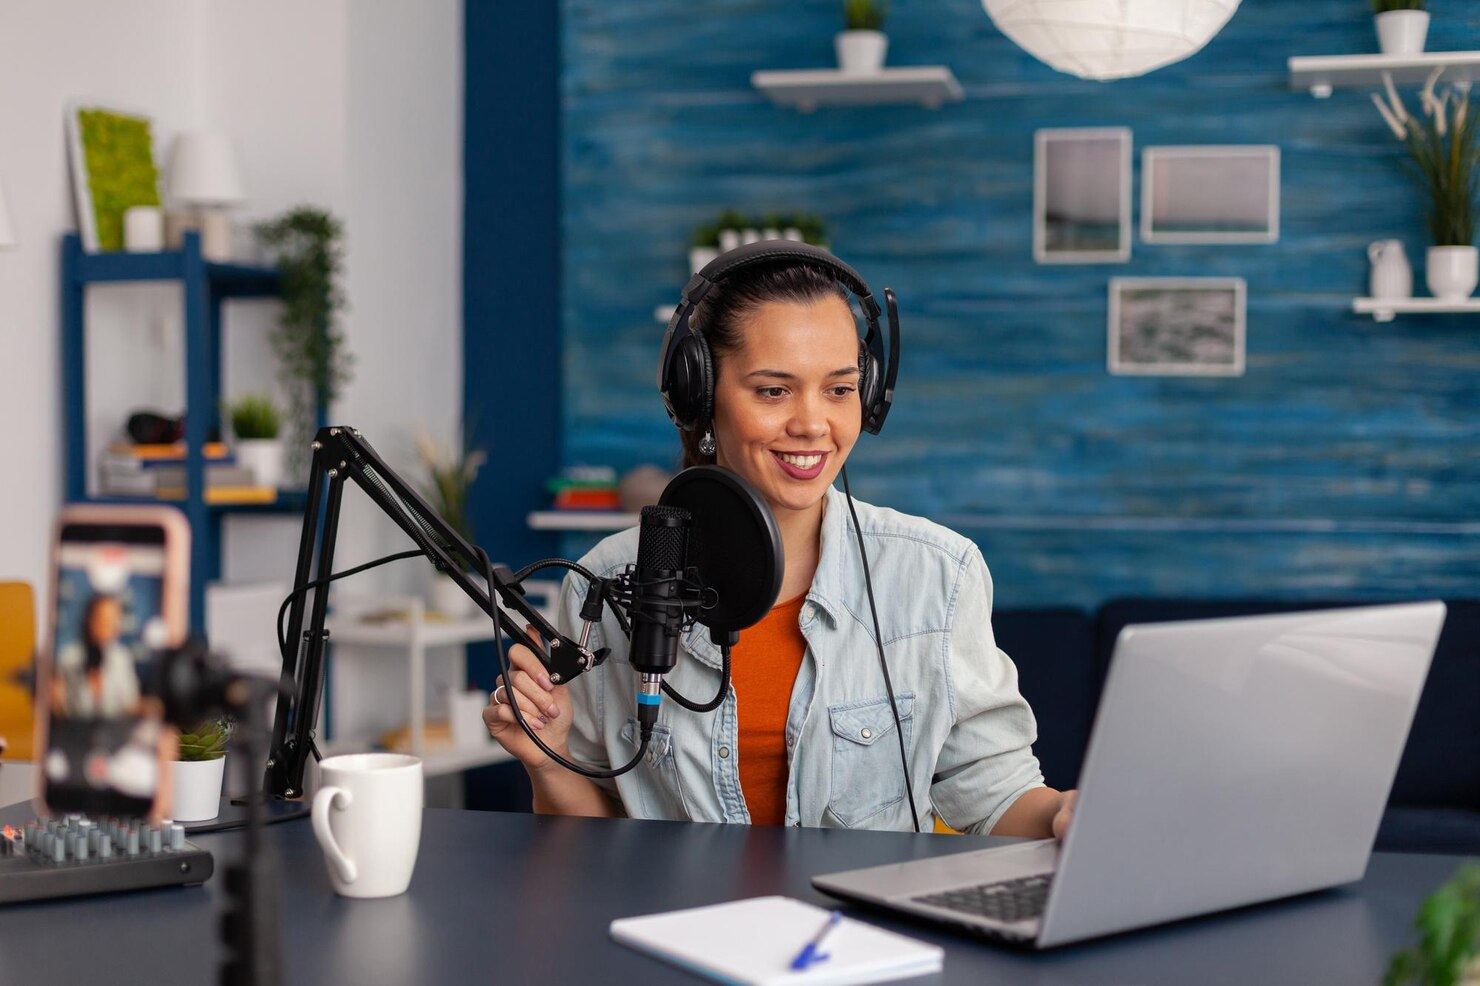 Mulher branca por volta de 25 anos, grava podcast com microfone e fone de ouvindo em frente a um computador portátil. Veste uma camisa laranja embaixo de um casaco jeans